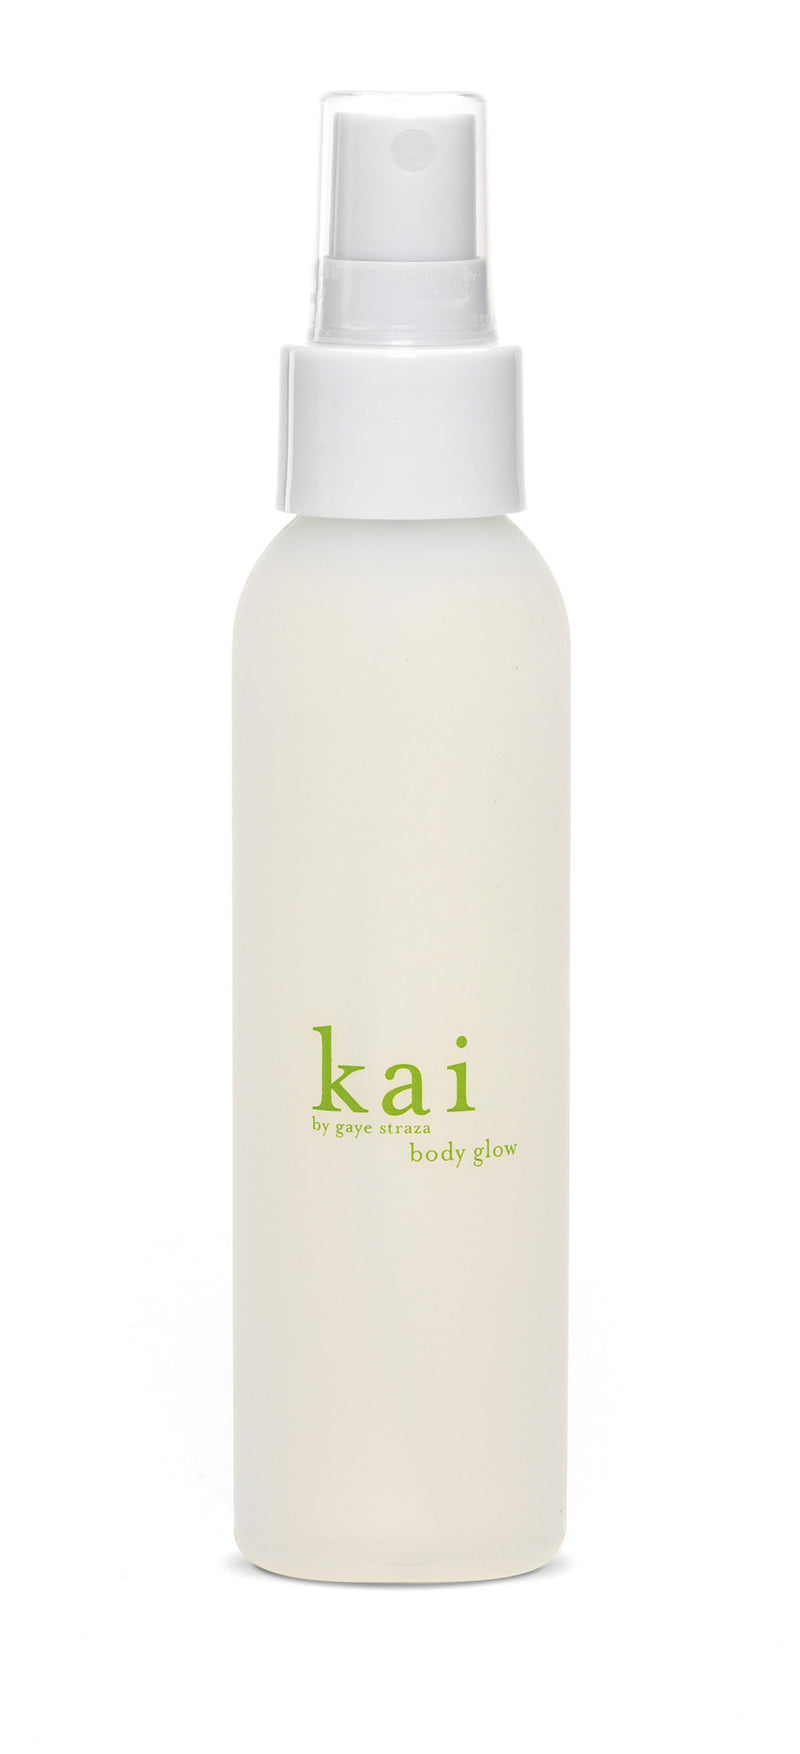 media image for kai body glow design by kai fragrance 1 27